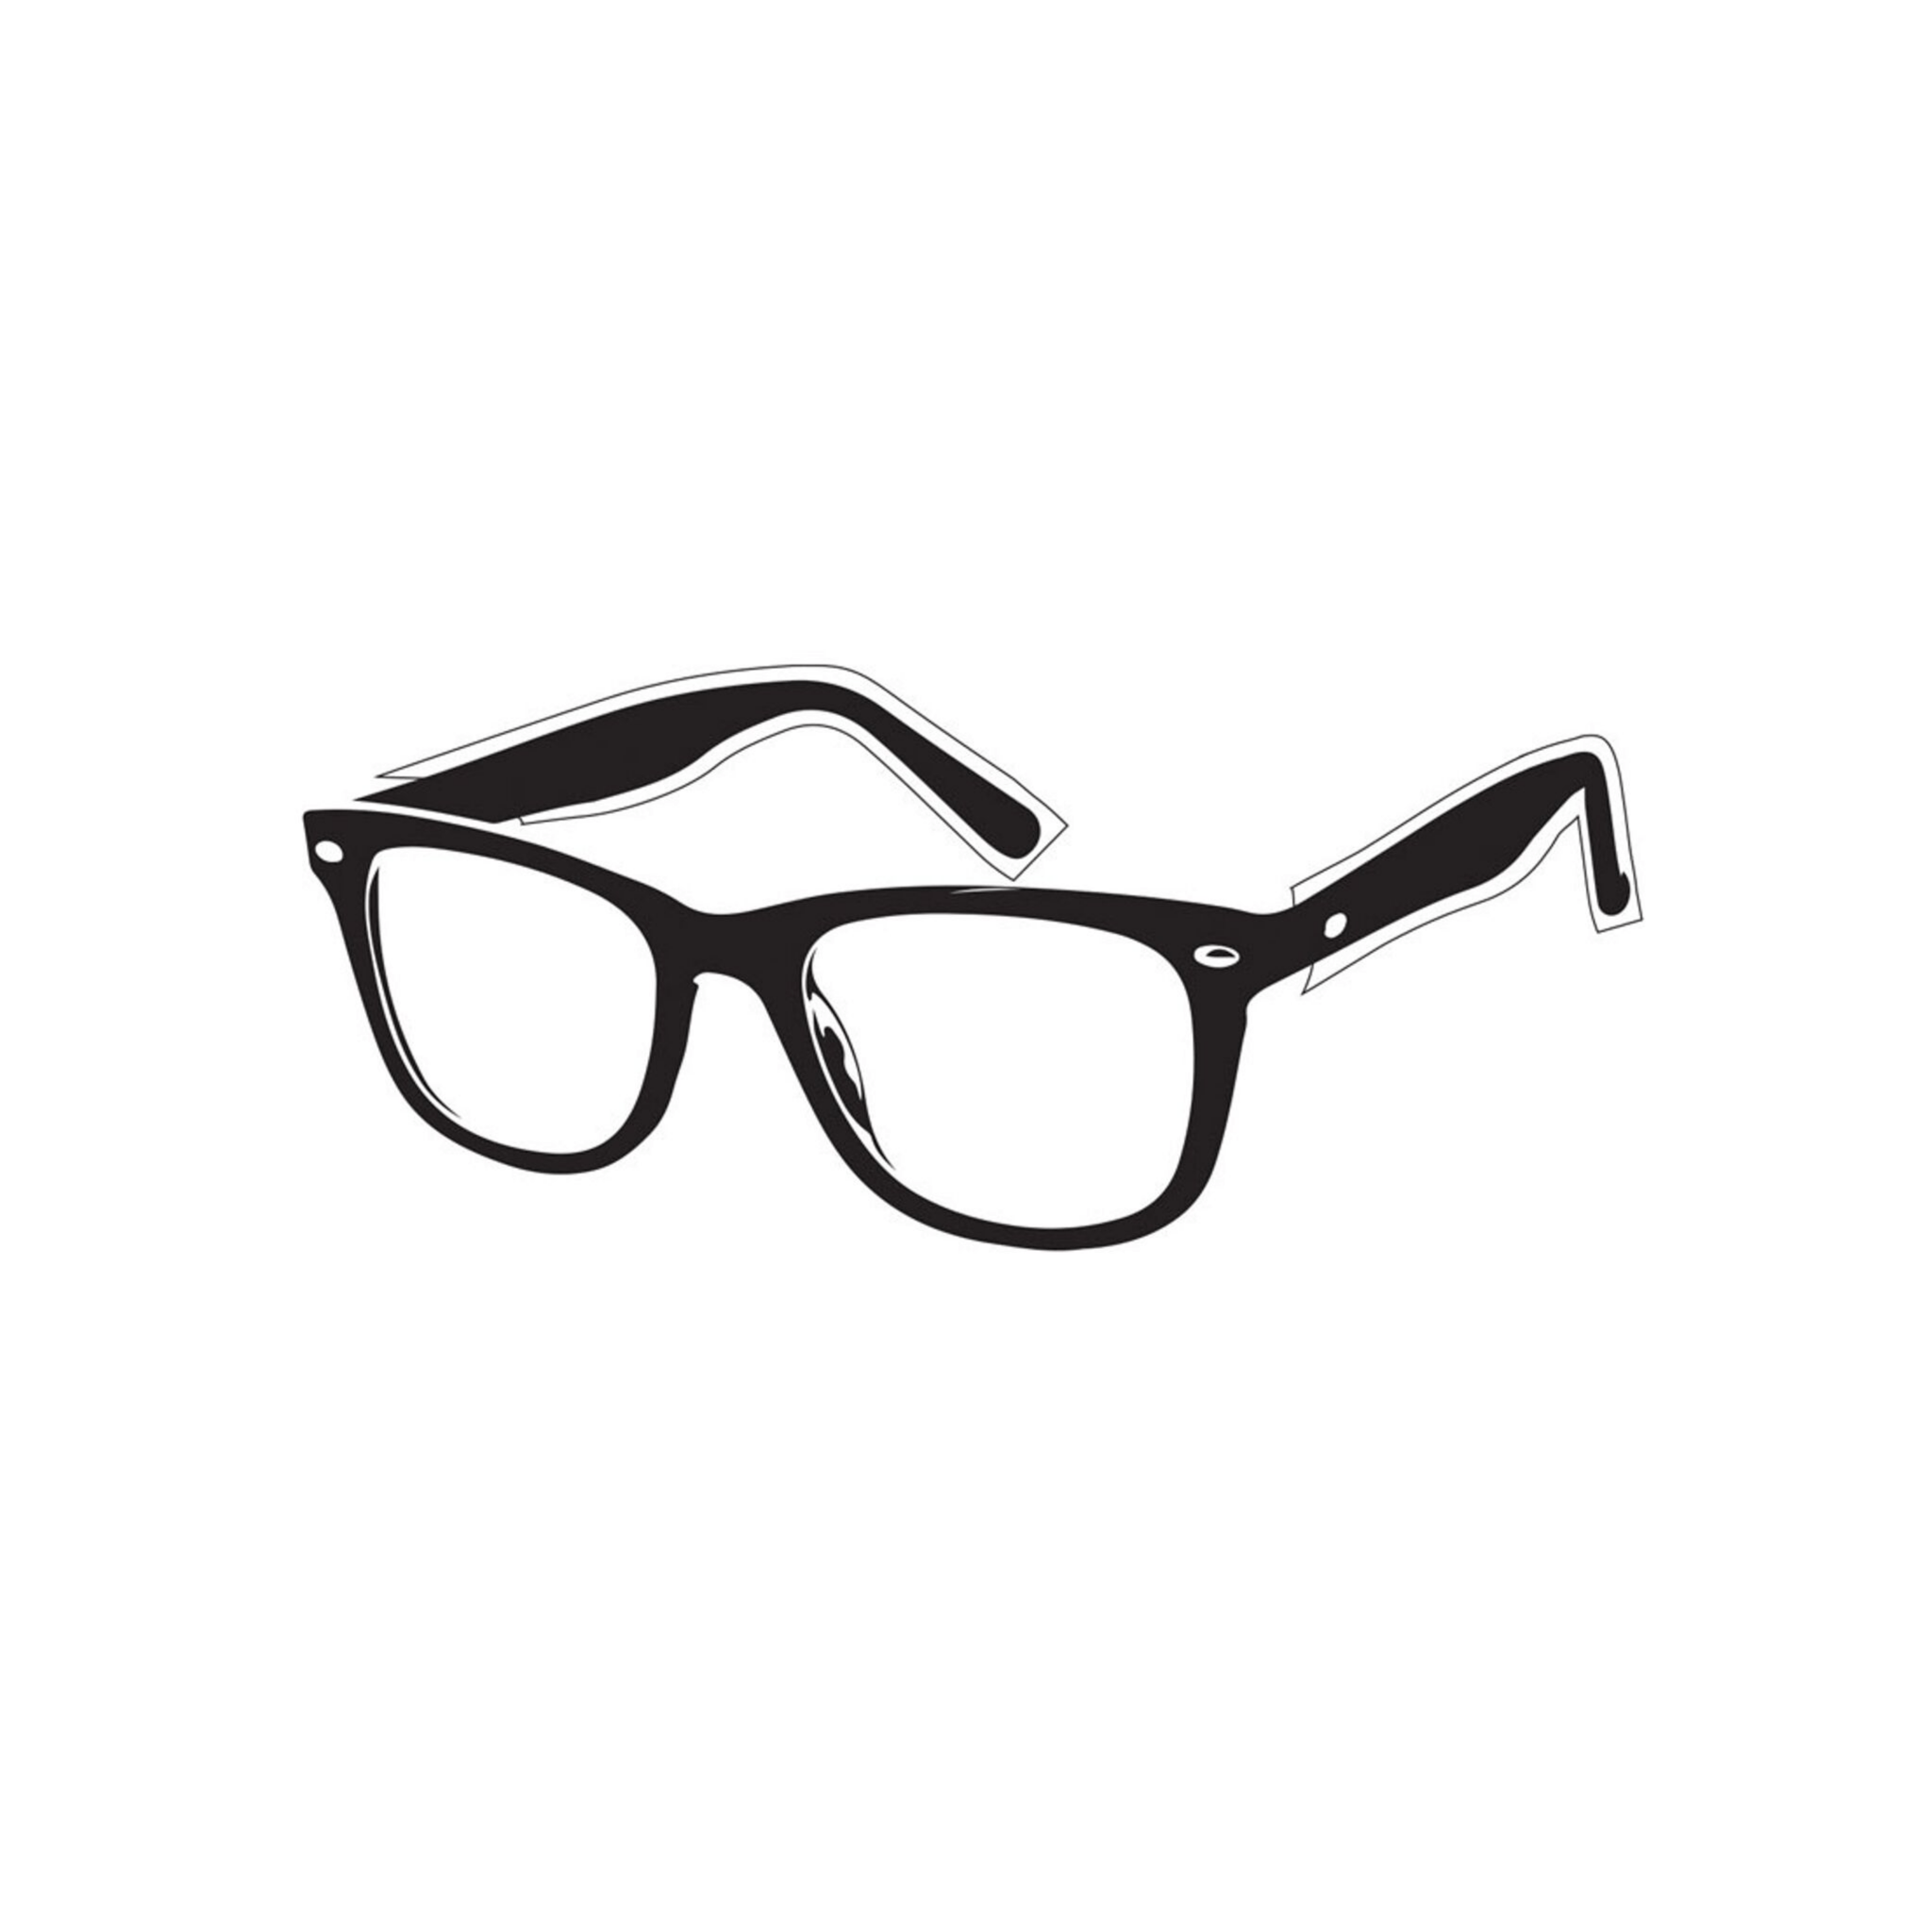 BaBylissPro. Protecteurs pour lunettes jetables - Concept C. Shop